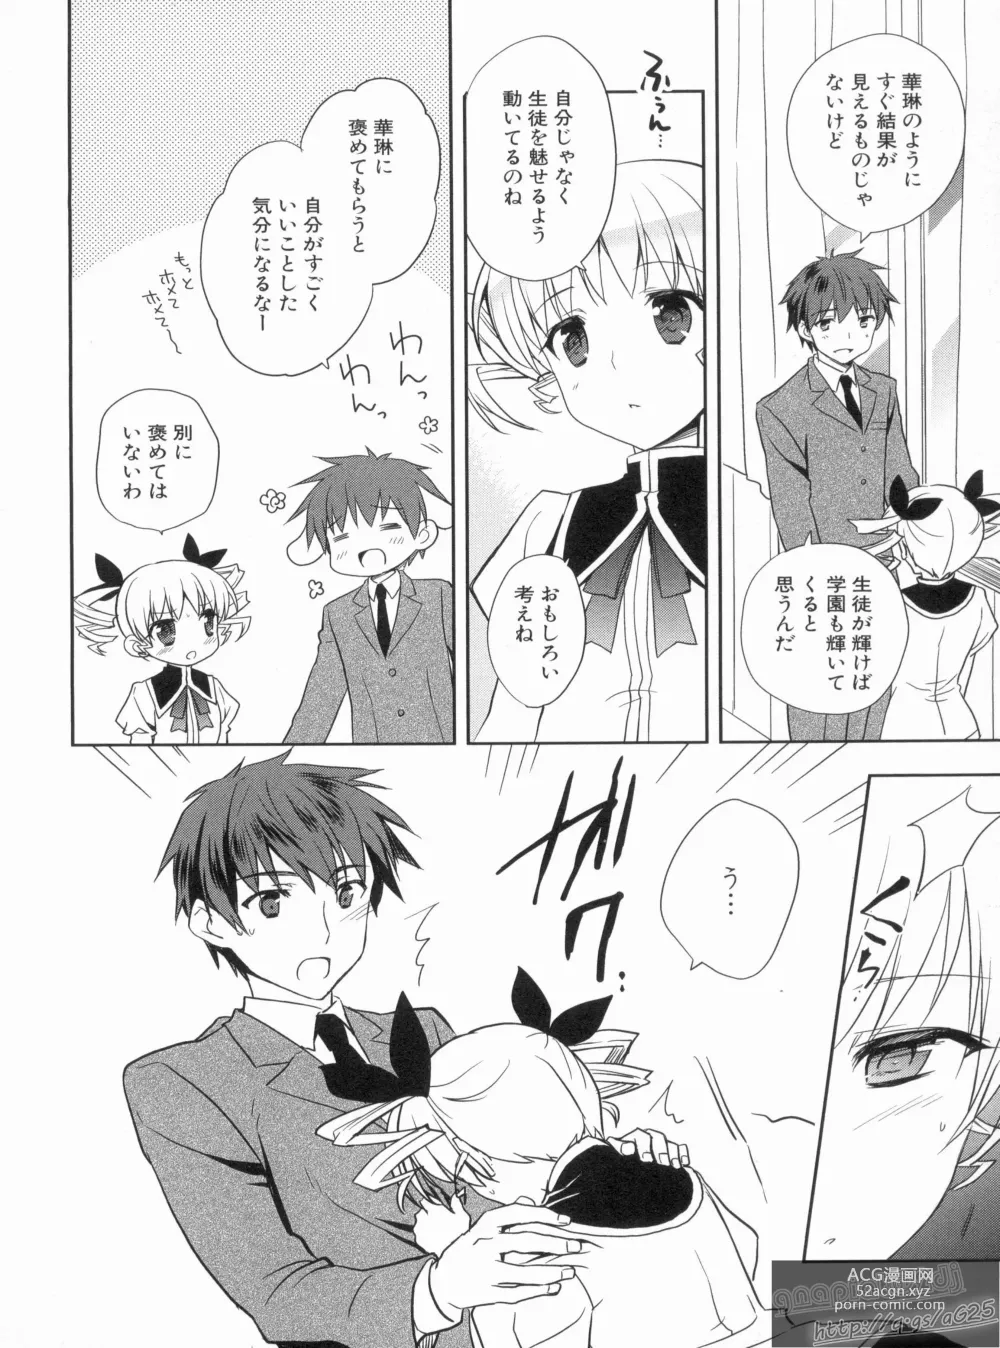 Page 22 of manga Shin Koihime Musou Gaishi Saiten VOL.3